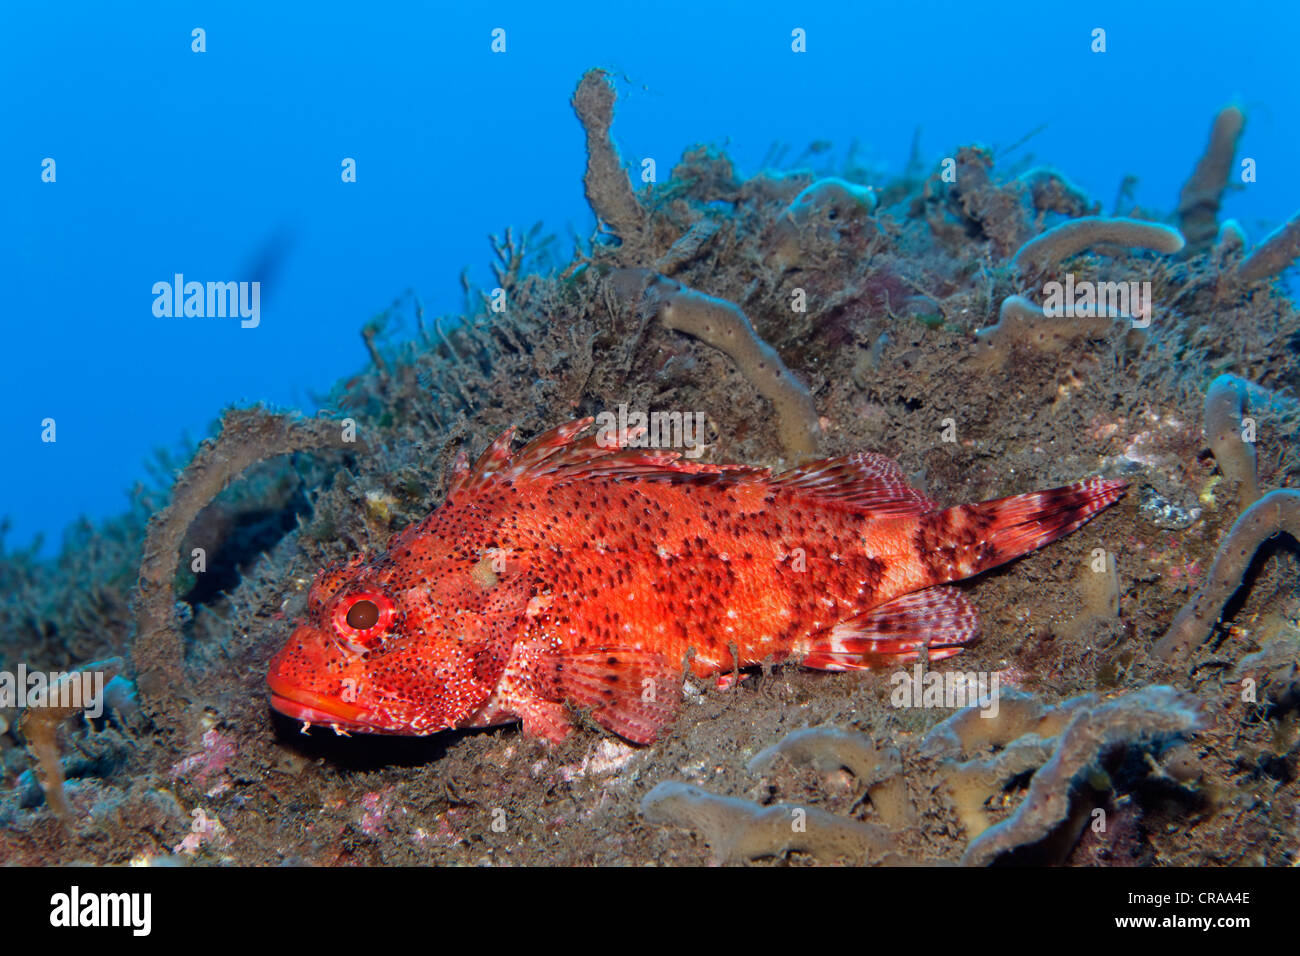 A Madera il pesce, (Scorpaena maderensis), sul suolo roccioso con spugne (Poriferi), Madeira, Portogallo, Europa Oceano Atlantico Foto Stock